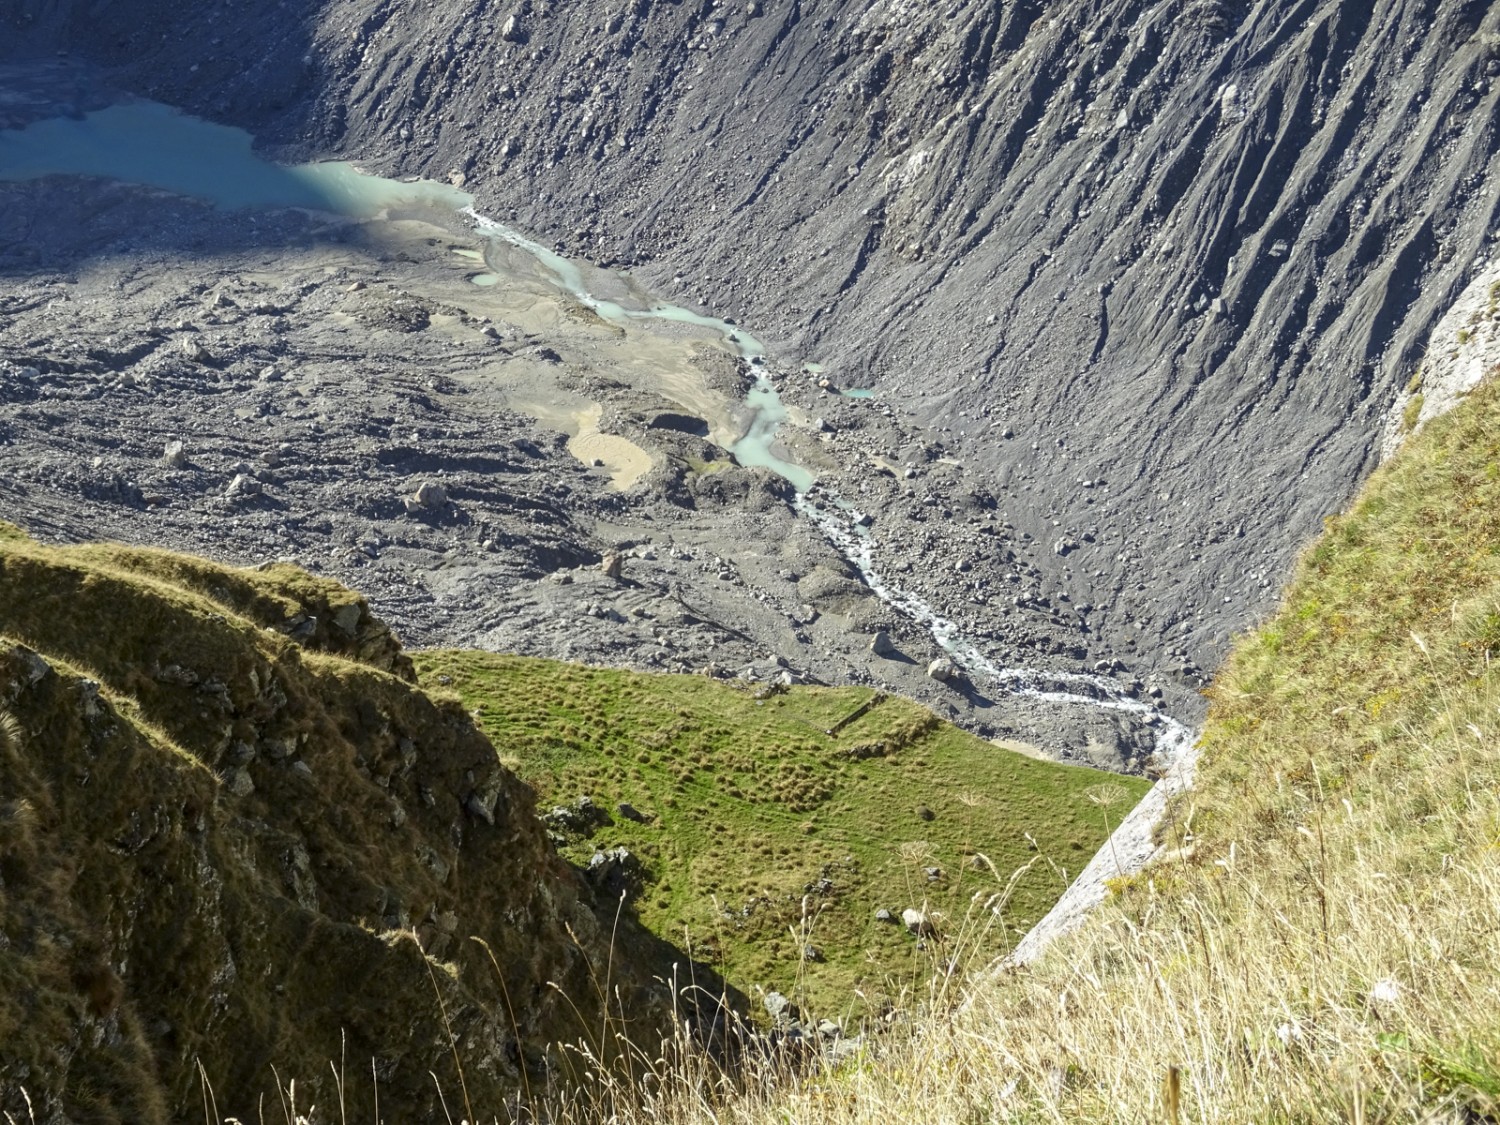 Les murs de fondement de la cabane de Stieregg restent visibles au niveau de l’arête de rupture de la moraine. La moraine au-dessus du glacier inférieur de Grindelwald ne cesse de glisser. Photo: Sabine Joss